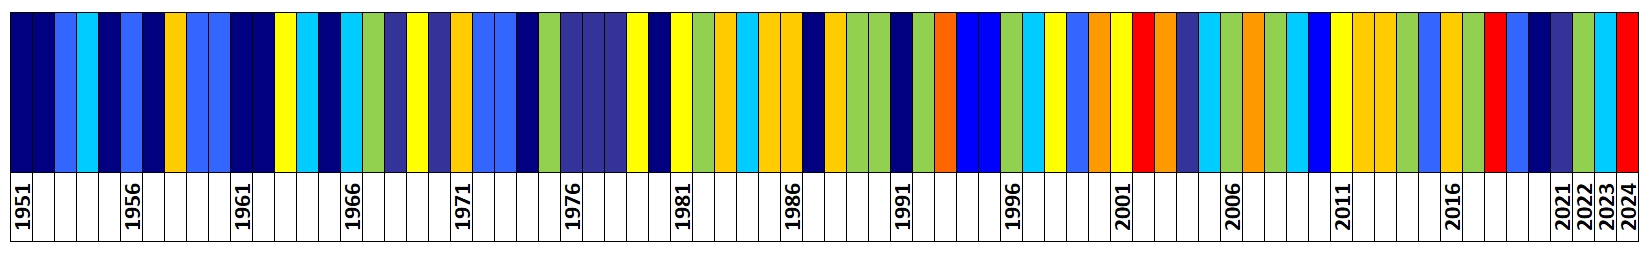 Klasyfikacja warunków termicznych w Polsce w maju, w okresie 1951-2024, na podstawie norm okresu  normalnego 1991-2020.